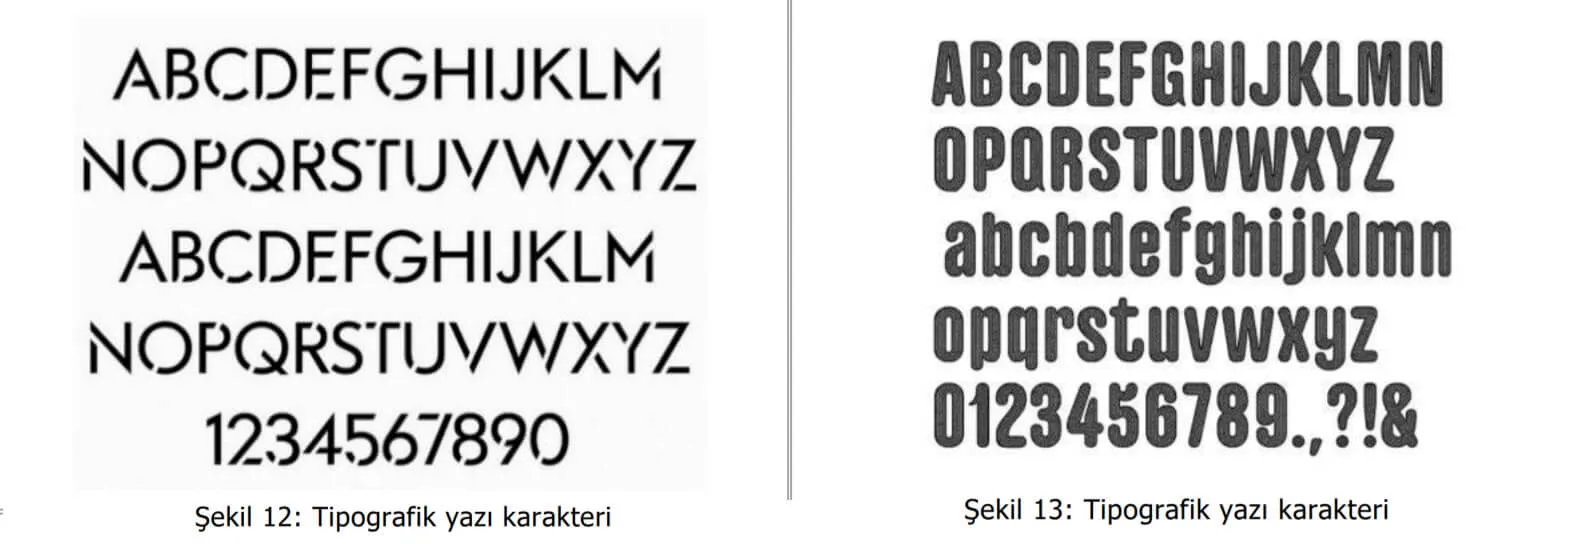 tipografik yazı karakter örnekleri-pendik web tasarım